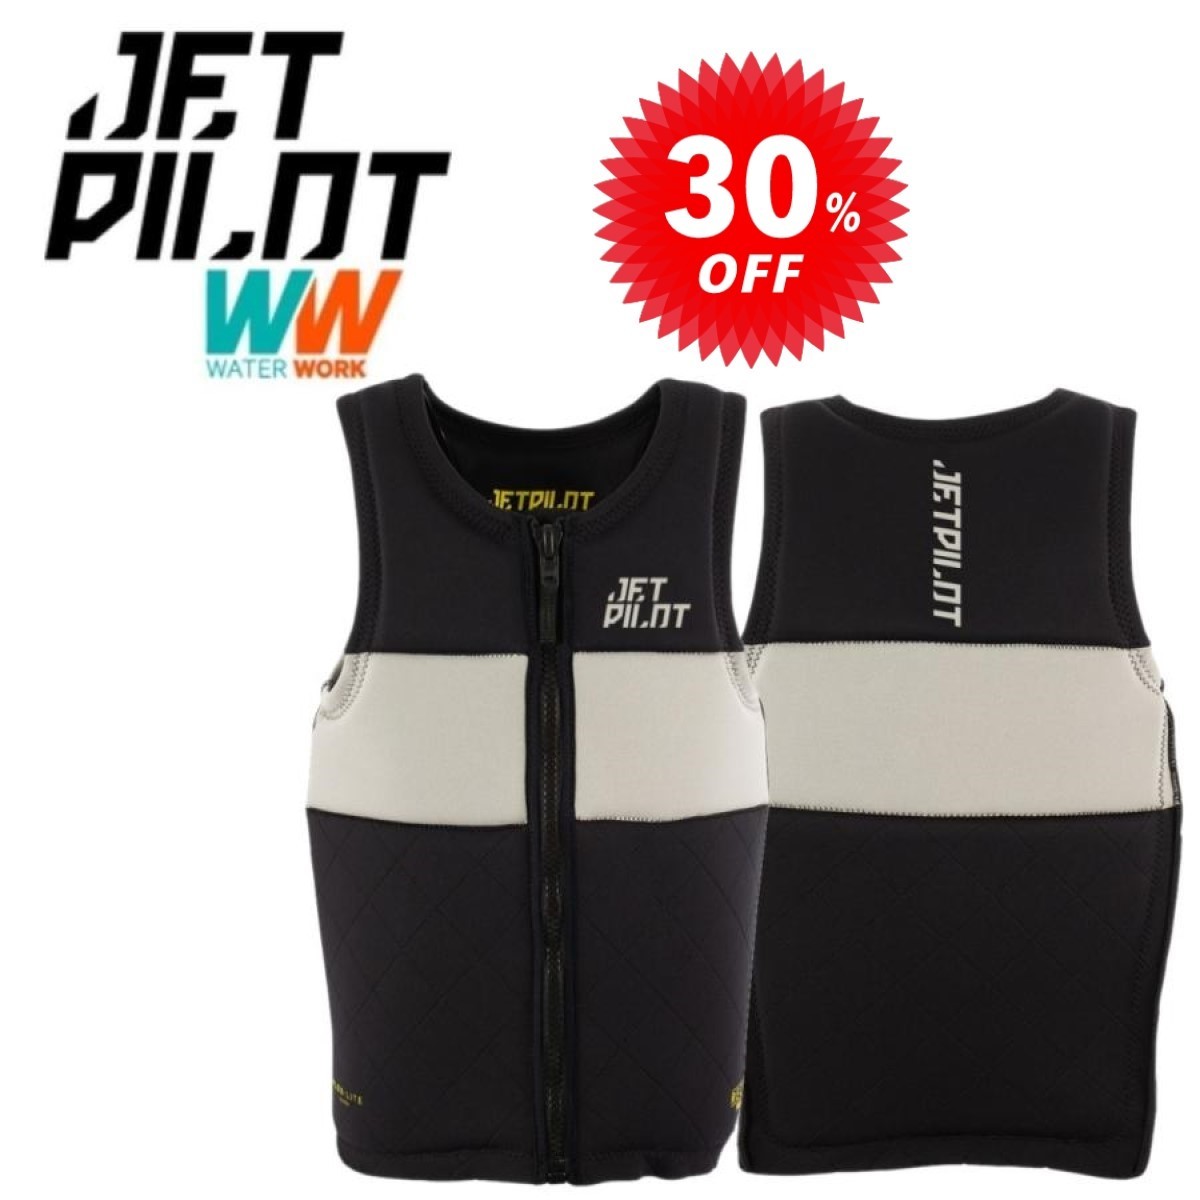 ジェットパイロット JETPILOT ライフジャケット セール 30%オフ 送料無料 マックス ミルデ リーコン F/E ネオ ベスト JA22111CE M